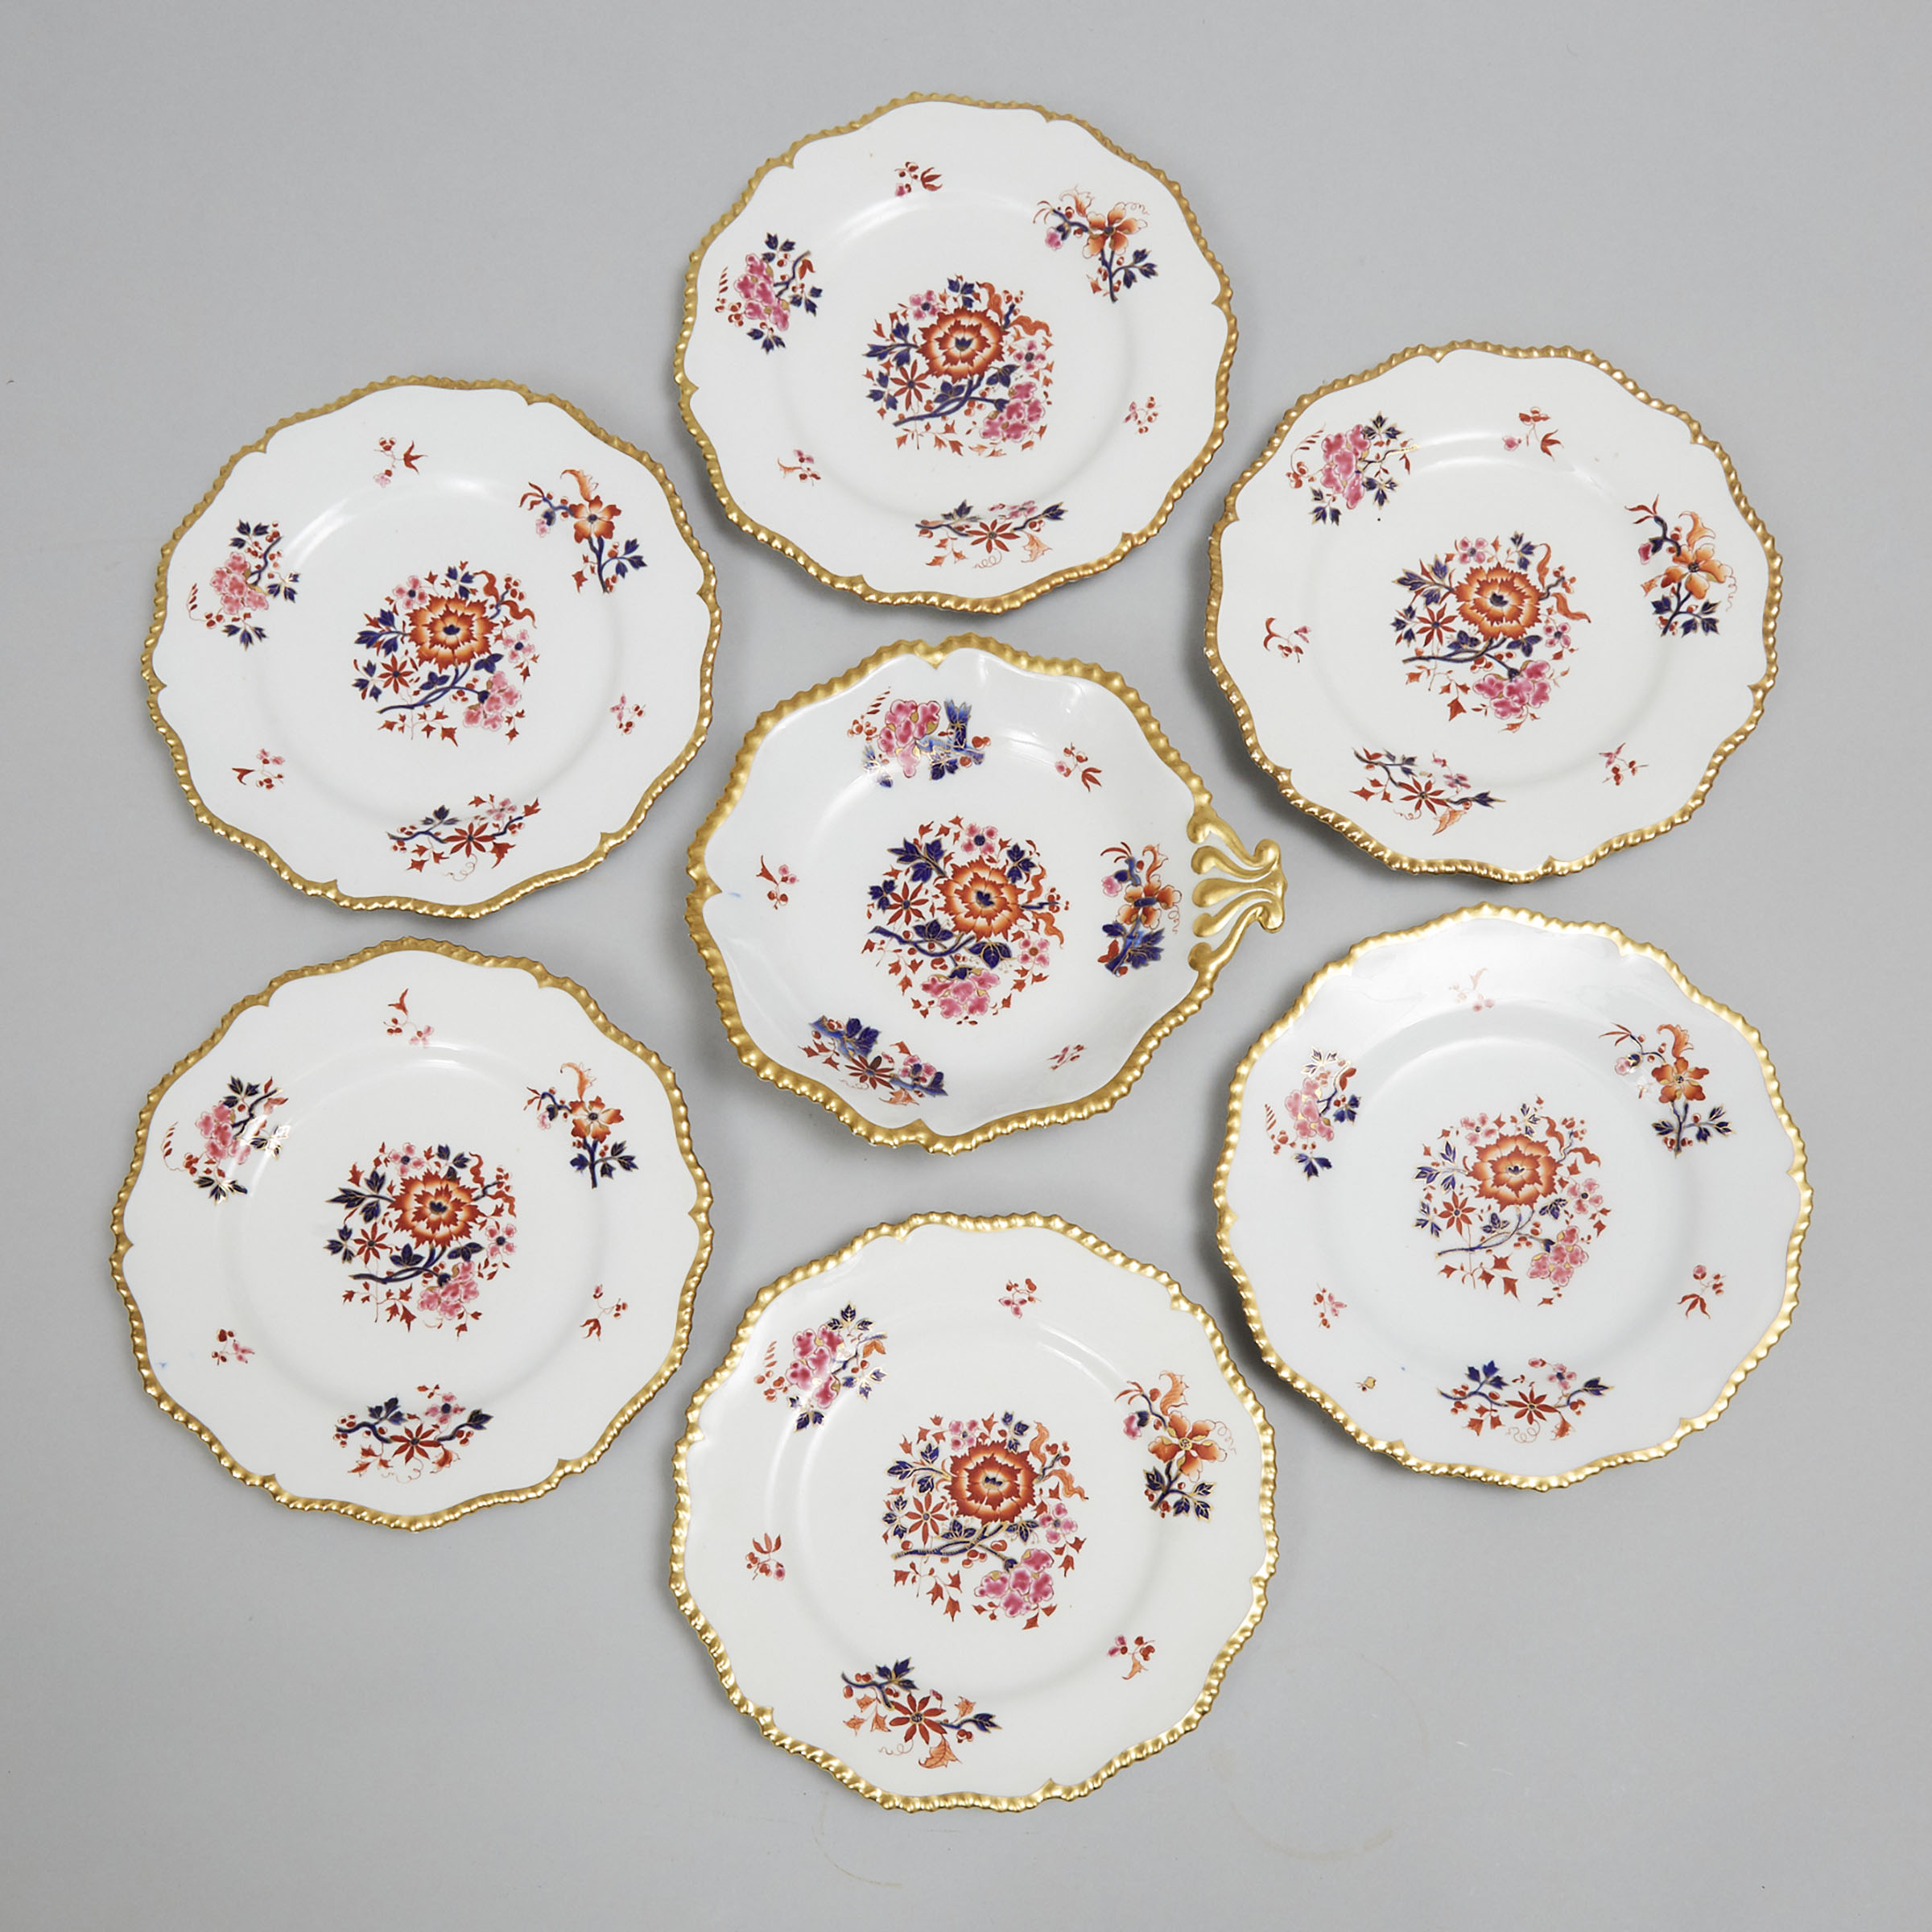 Six Flight, Barr & Barr, Worcester Dessert Plates and a Shell Dish, c.1813-40